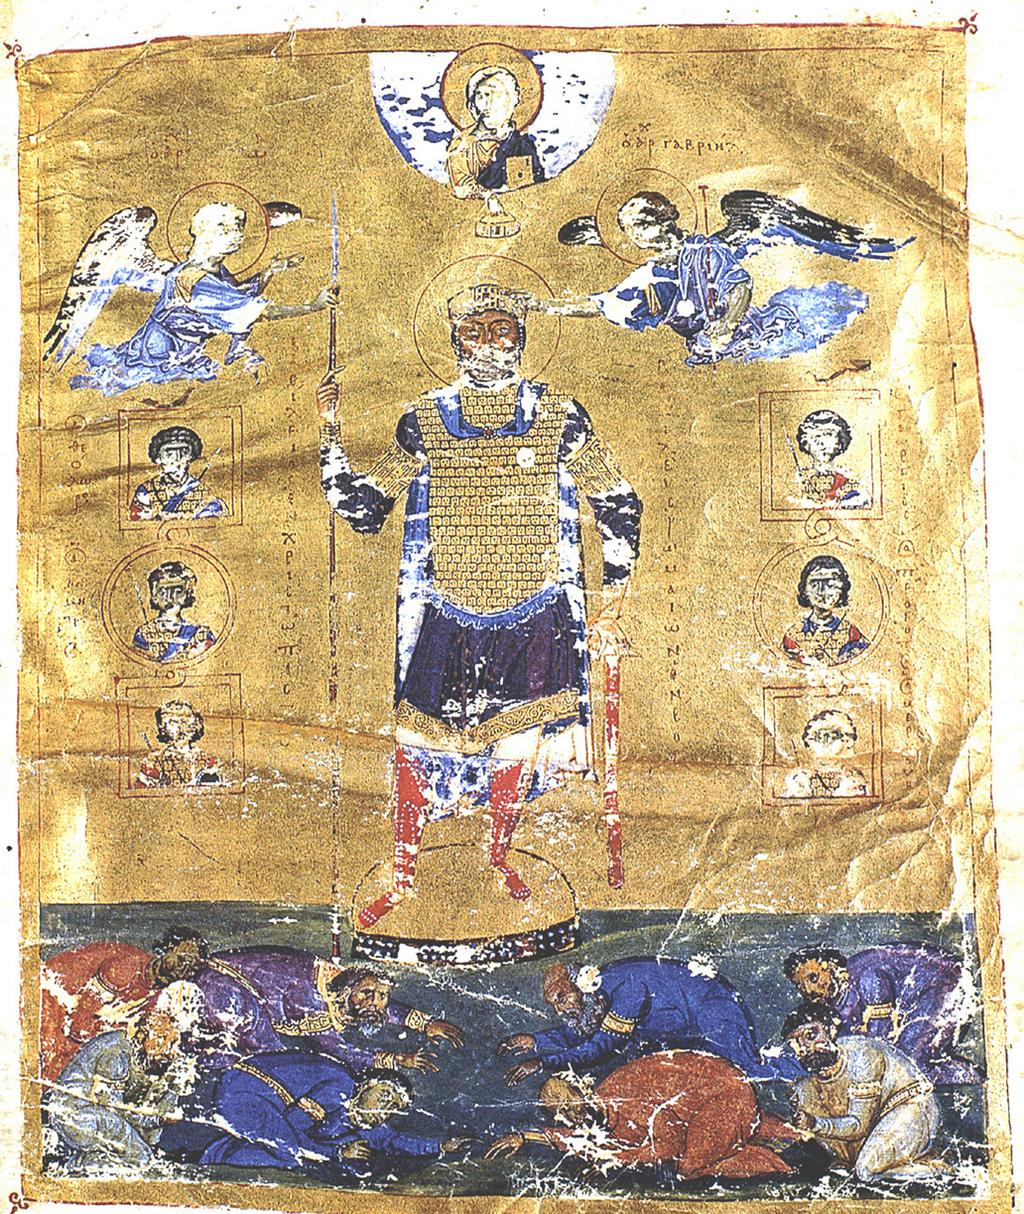 MAGYAR RÉGÉSZET ONLINE MAGAZIN 2017 ŐSZ 1. kép: II. Baszileiosz ábrázolása a Codex Marcianusban Parani, Maria G.: Reconstructing the Reality of Images.